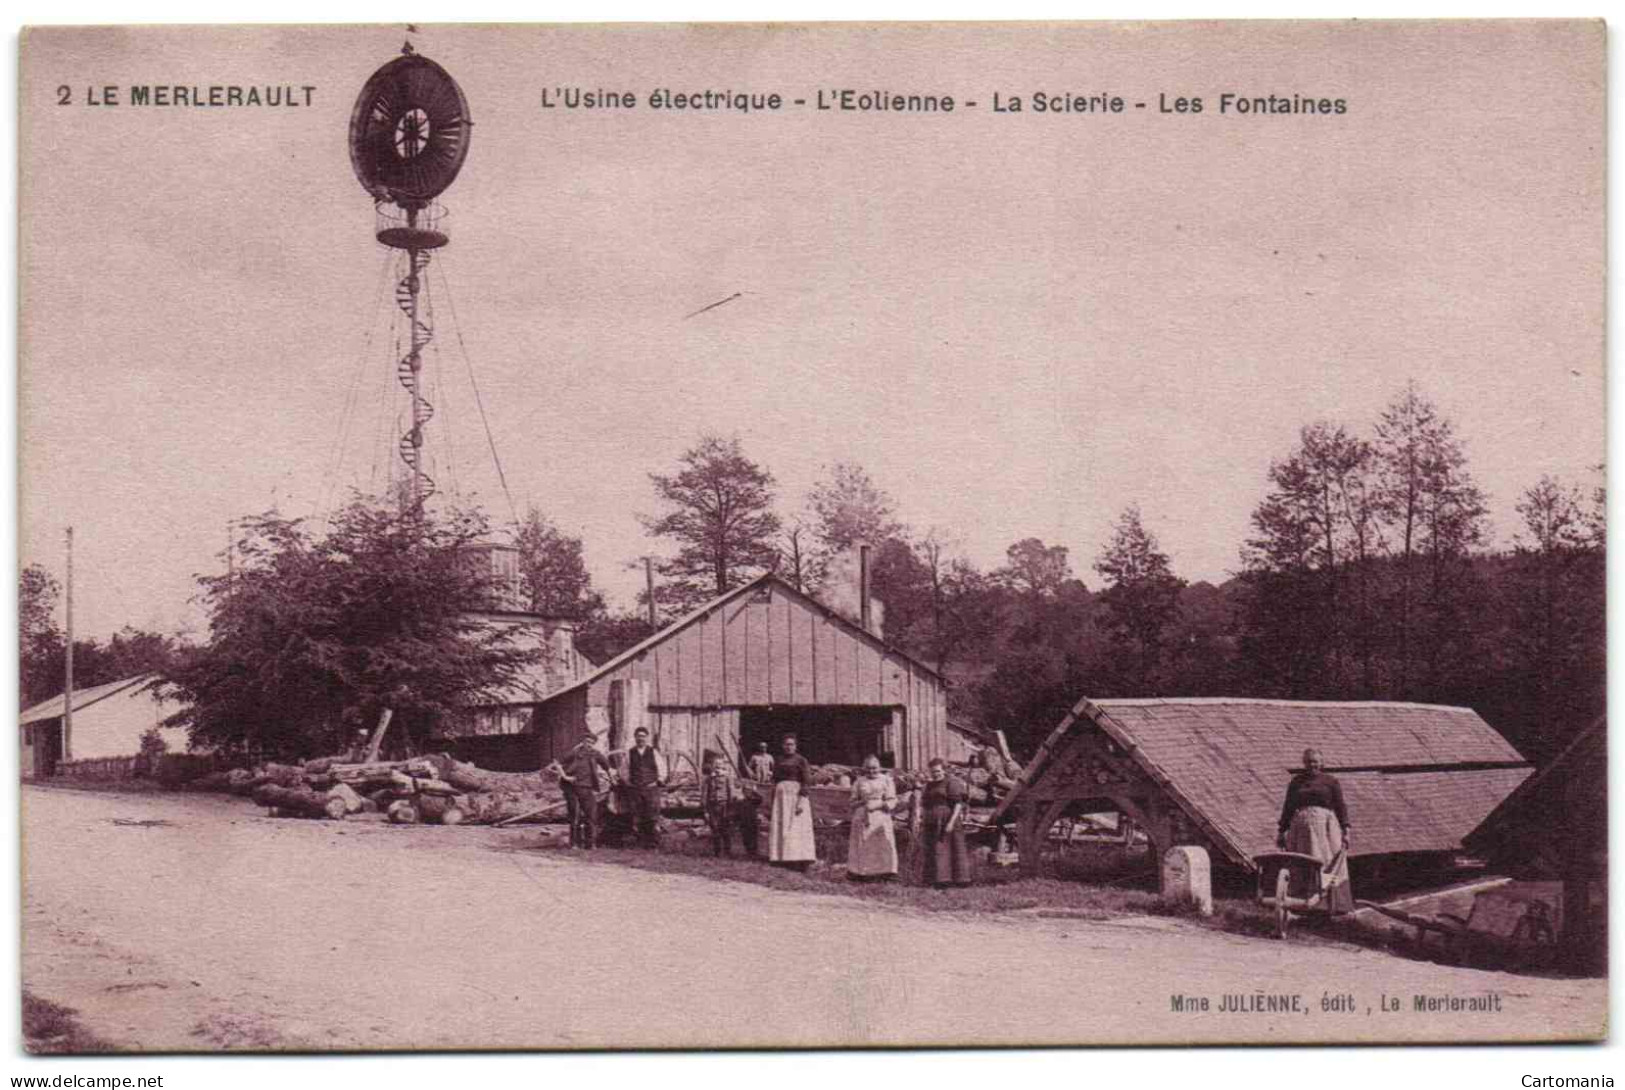 Le Merlerault - L'Usine électrique - L'Eolienne - La Scierie - Les Fontaines - Le Merlerault